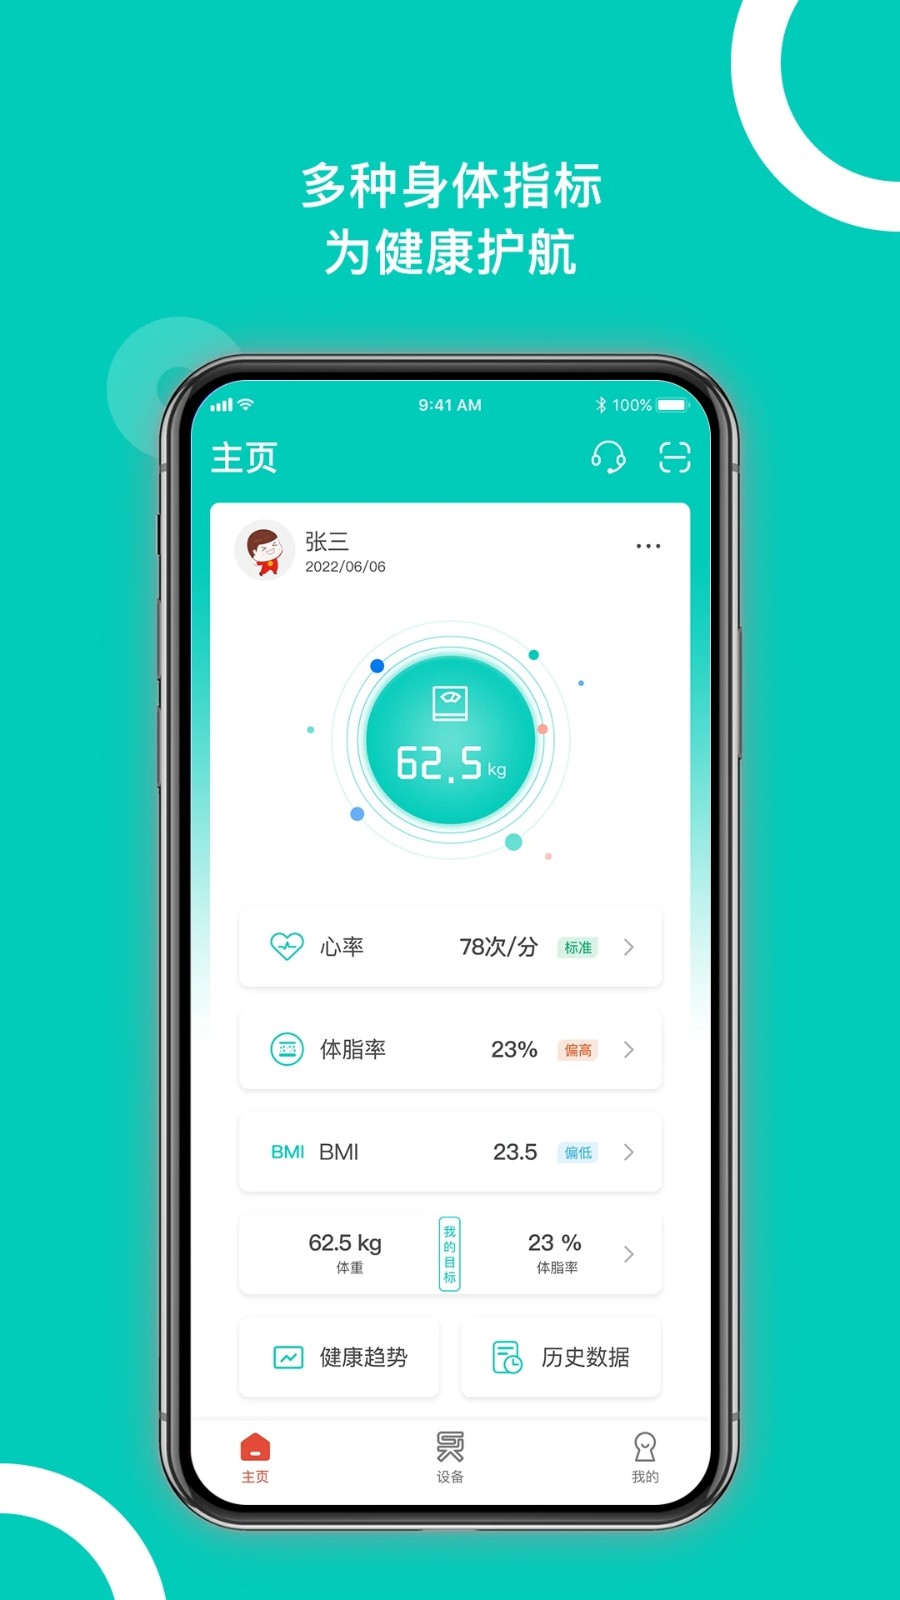 西昊智能app